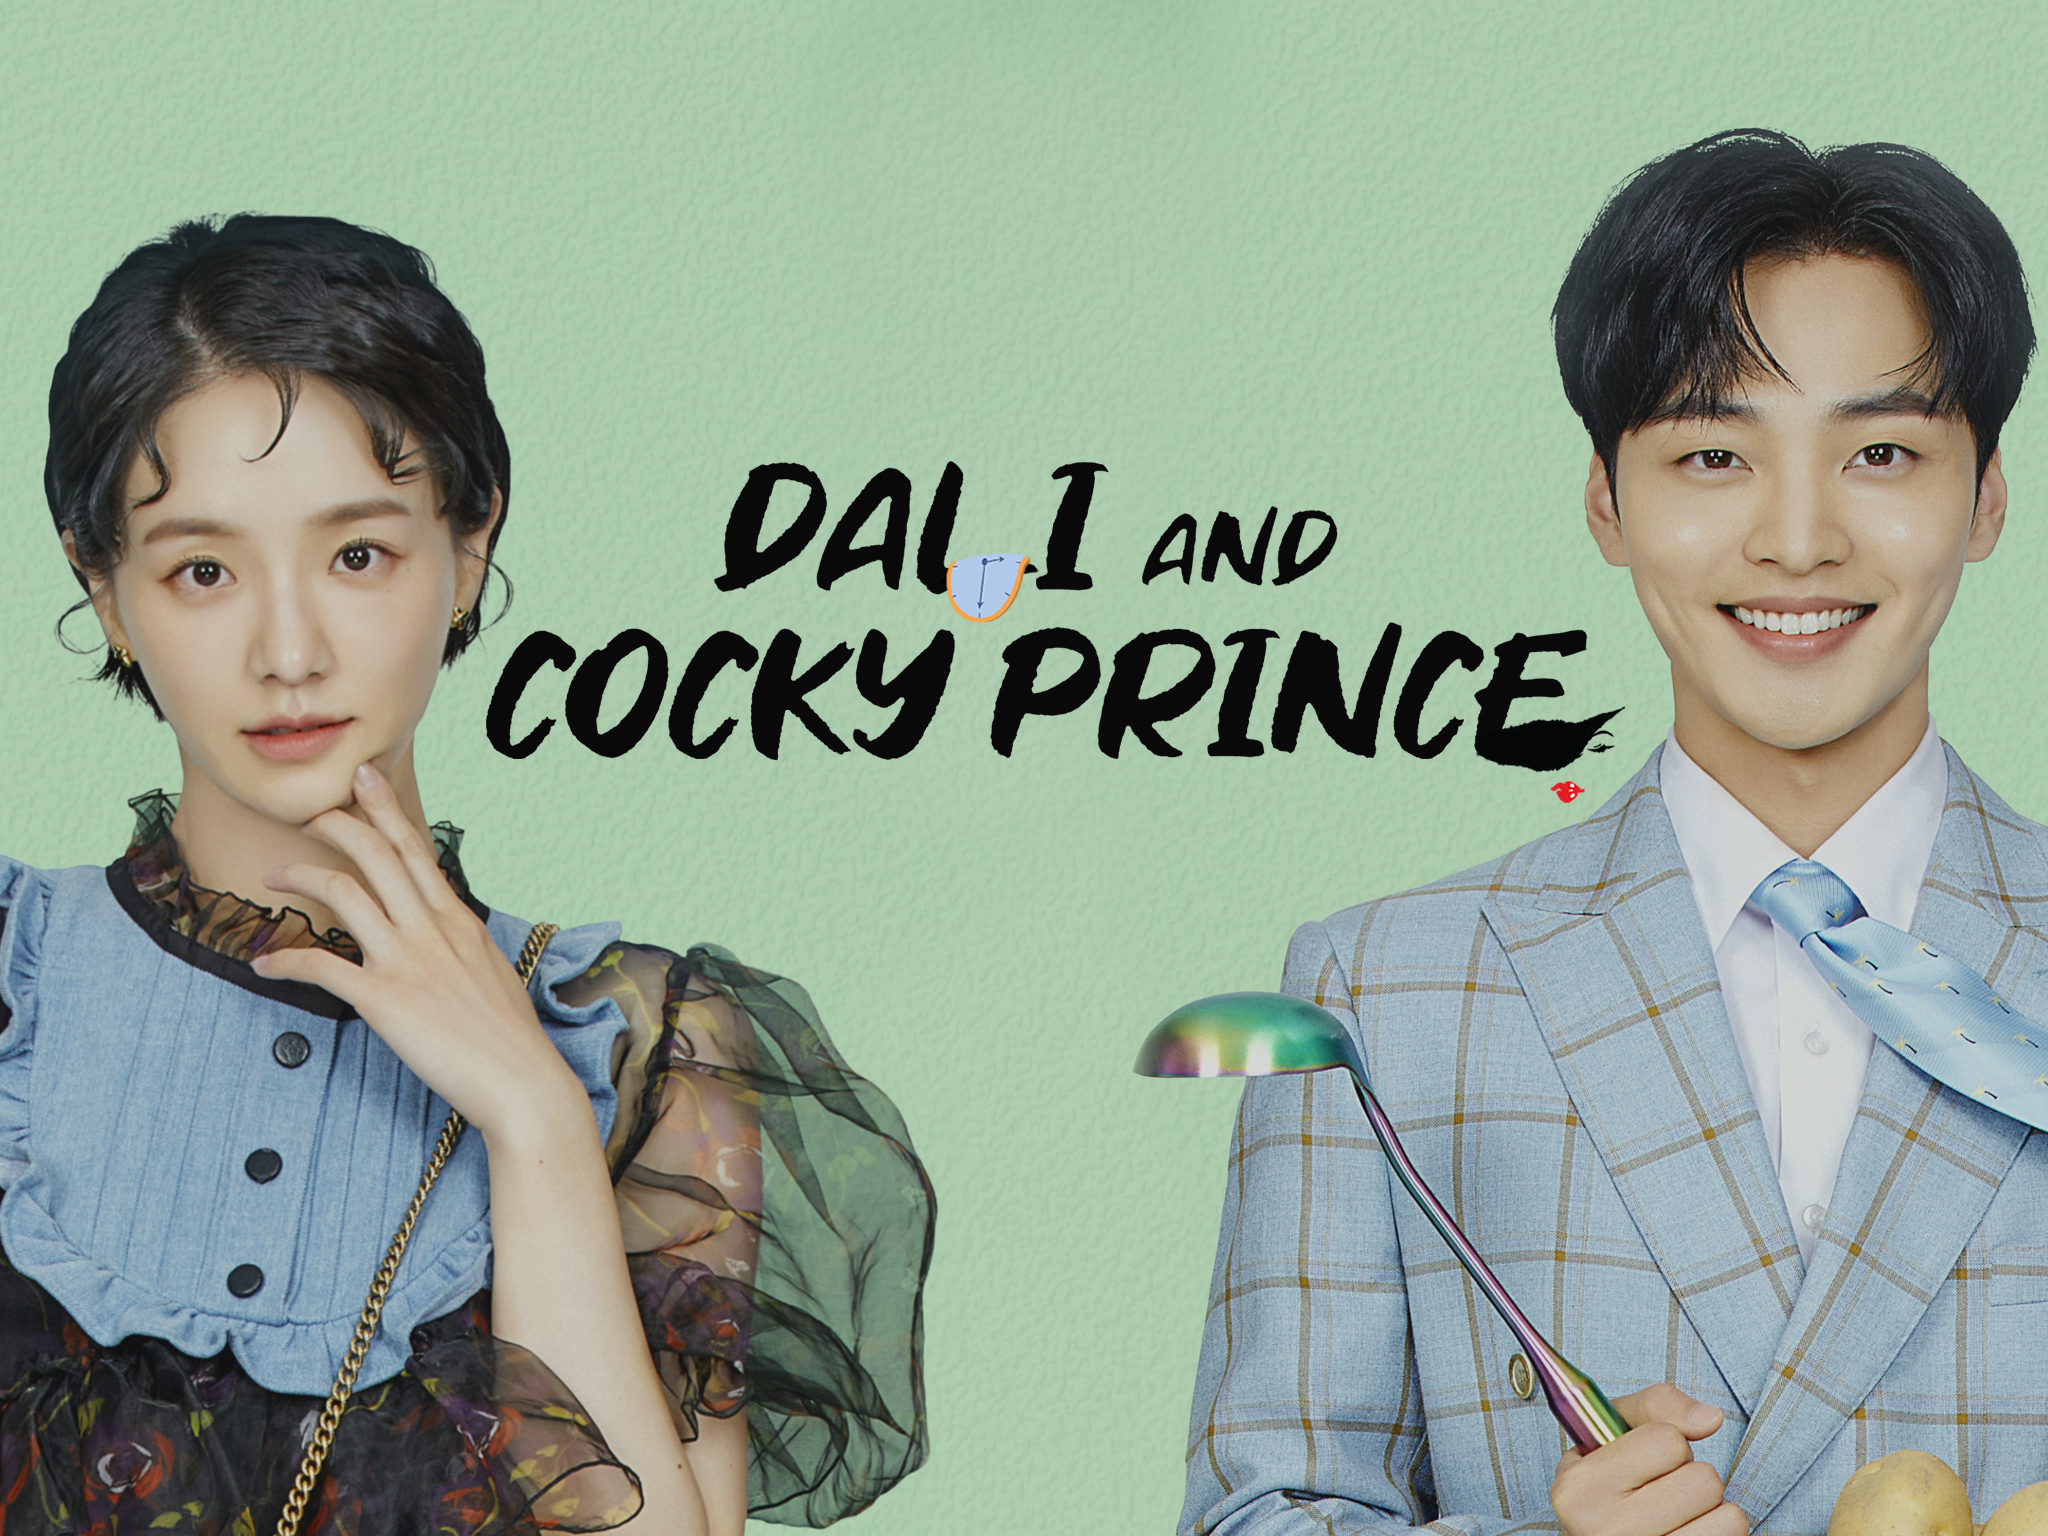 Dali Và Hoàng Tử Ngổ Ngáo – Dali And Cocky Prince (2021) Full HD Vietsub – Tập 1